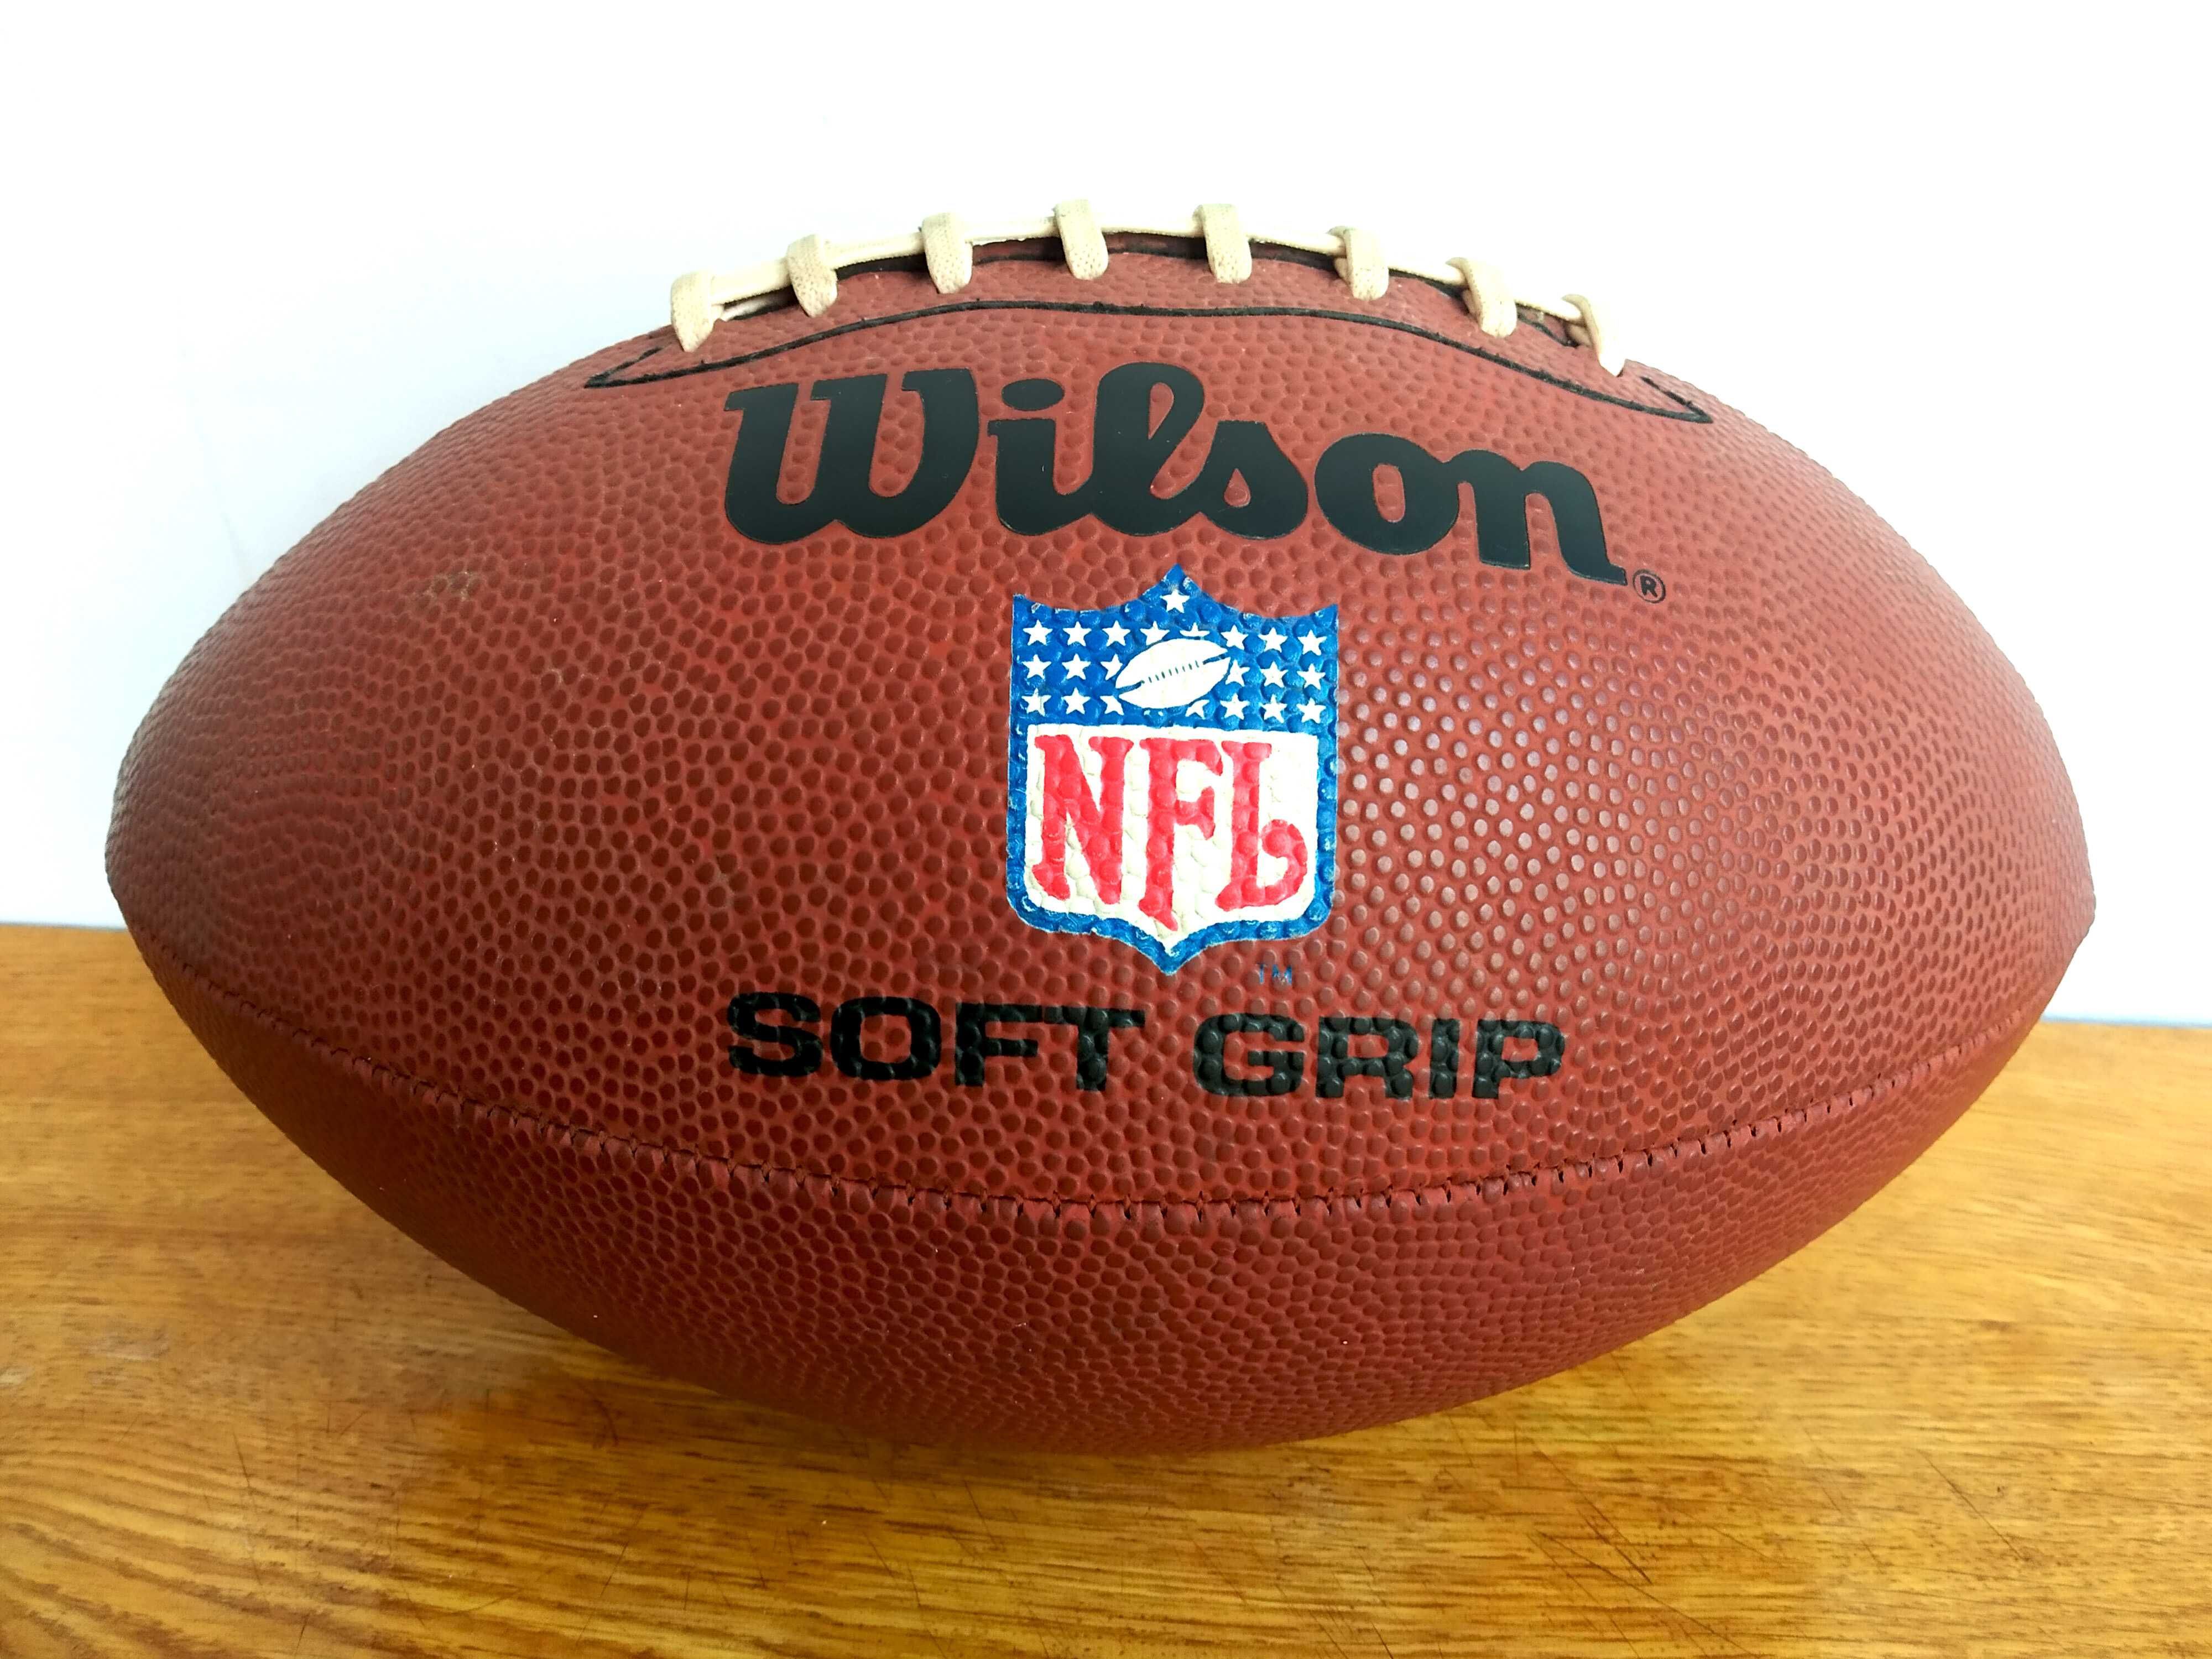 Мяч Wilson NFL Американський футбол